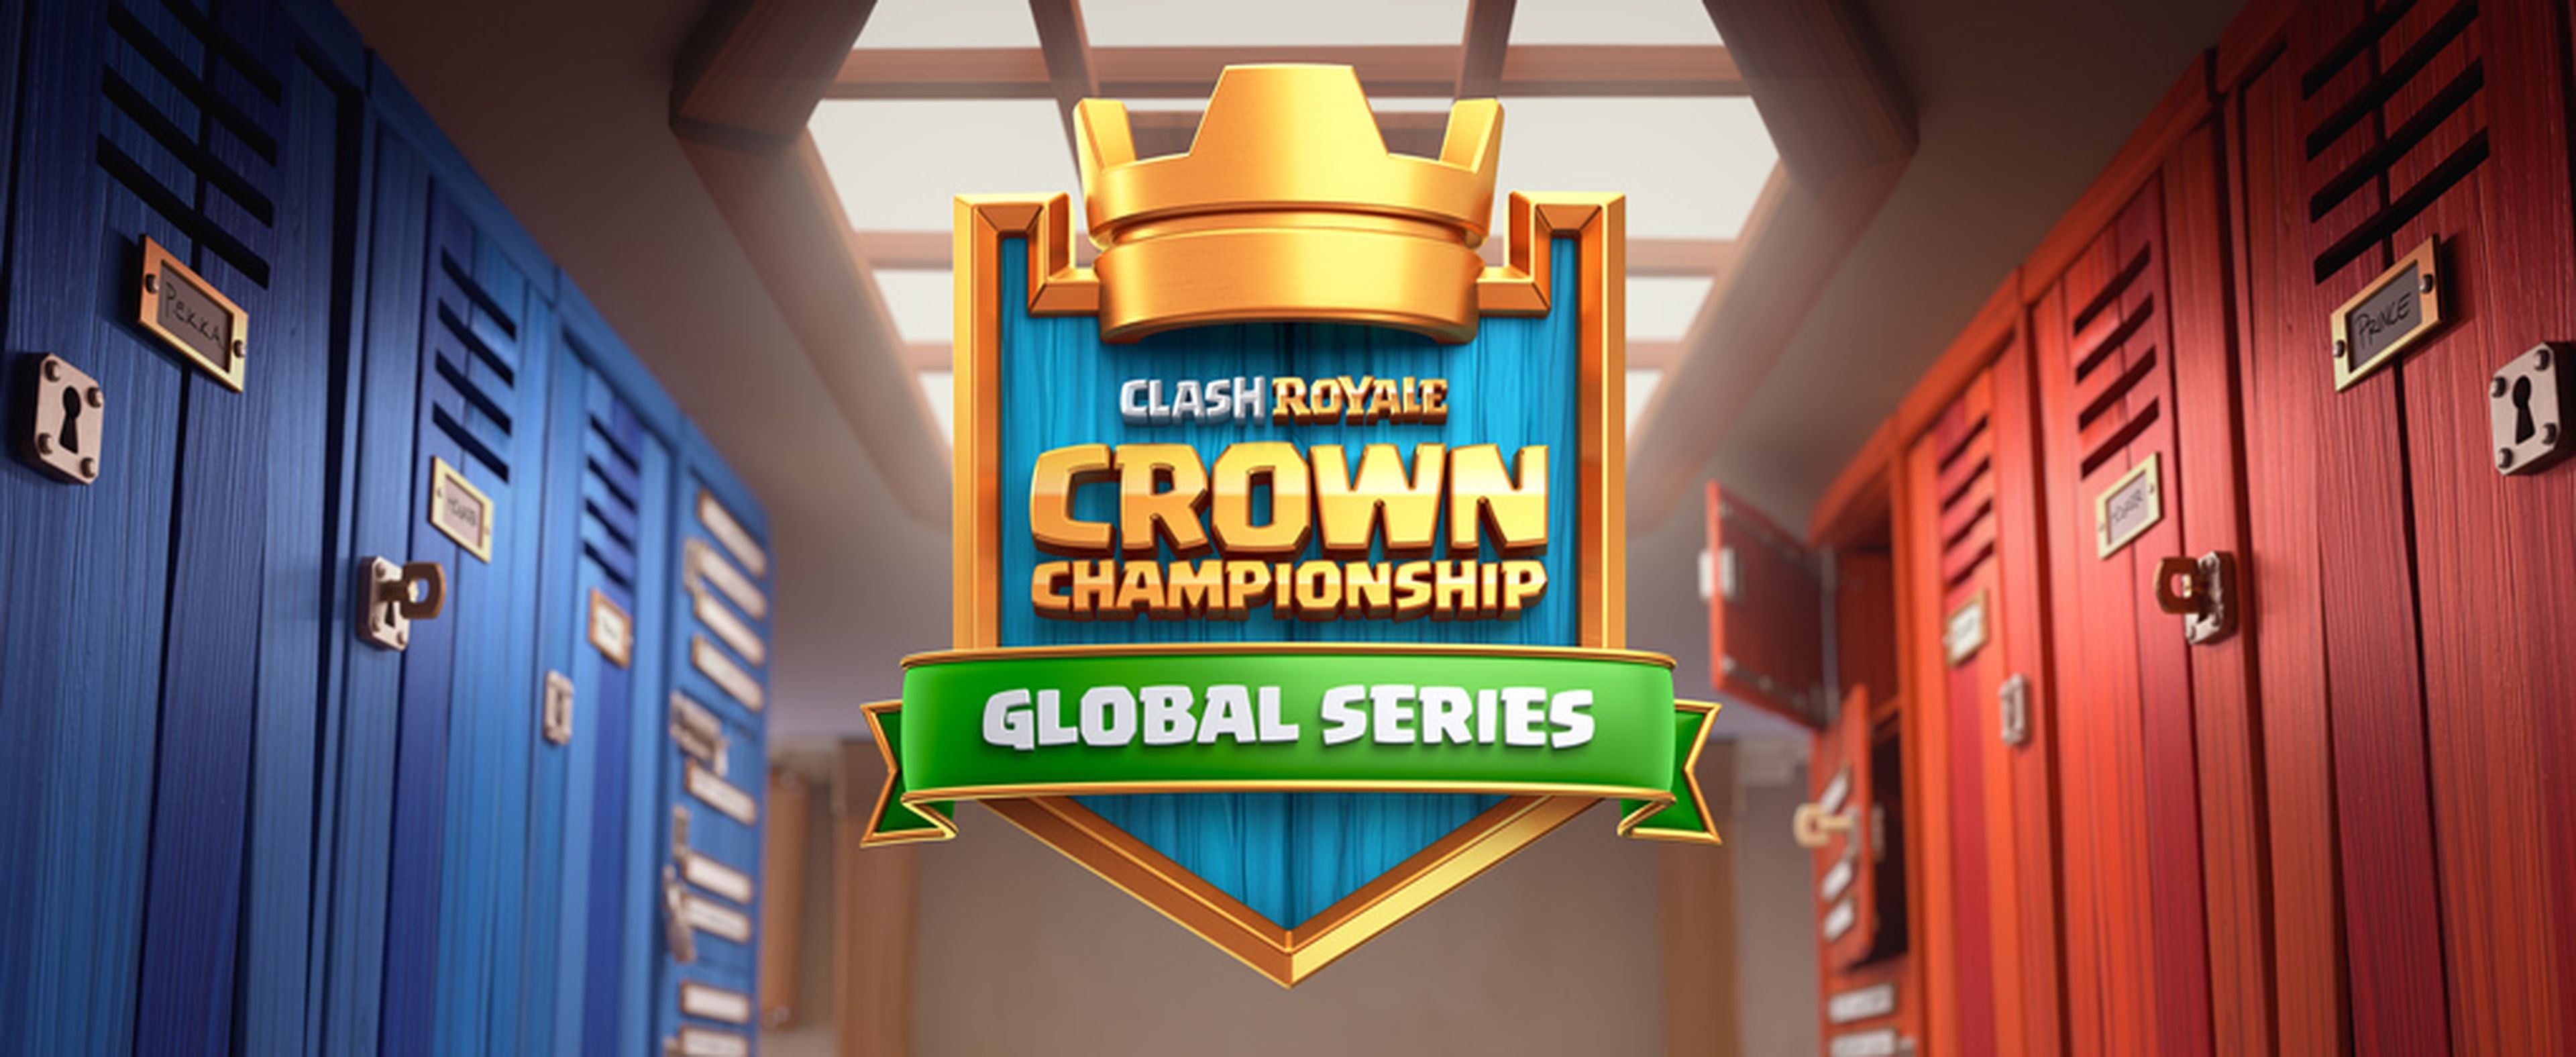 Crown Championship de Clash Royale